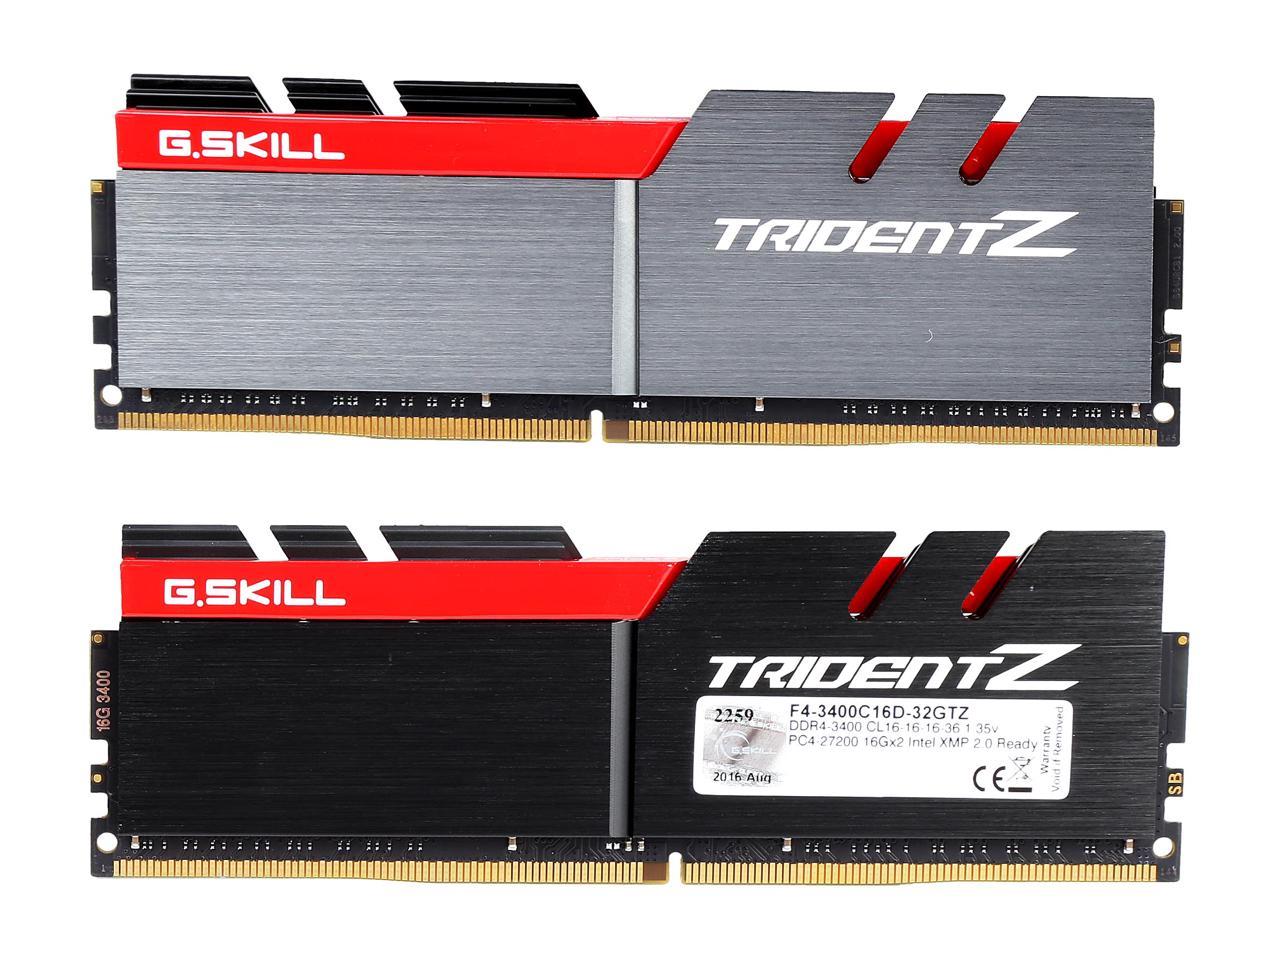 G.SKILL TridentZ Series 32GB (2 x 16GB) 288-Pin DDR4 SDRAM DDR4 3400 (PC4 27200) Intel Z370 Platform Desktop Memory Model F4-3400C16D-32GTZ